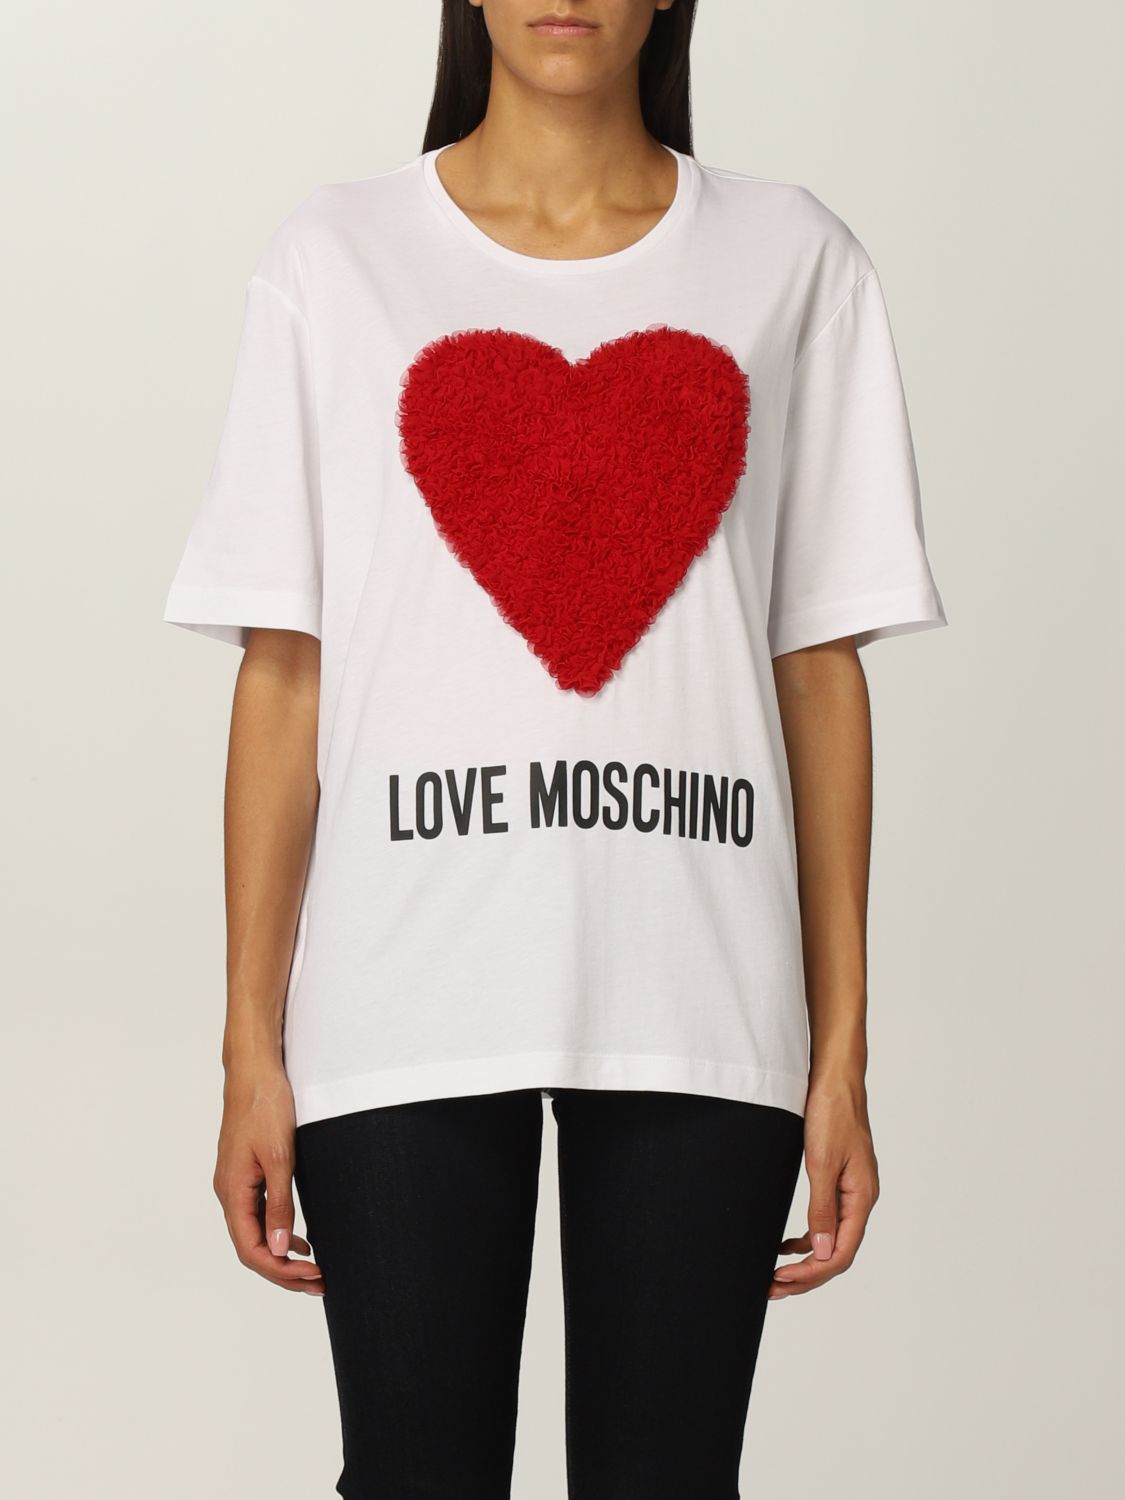 LOVE MOSCHINO: women's t-shirt - White | Love Moschino t-shirt ...